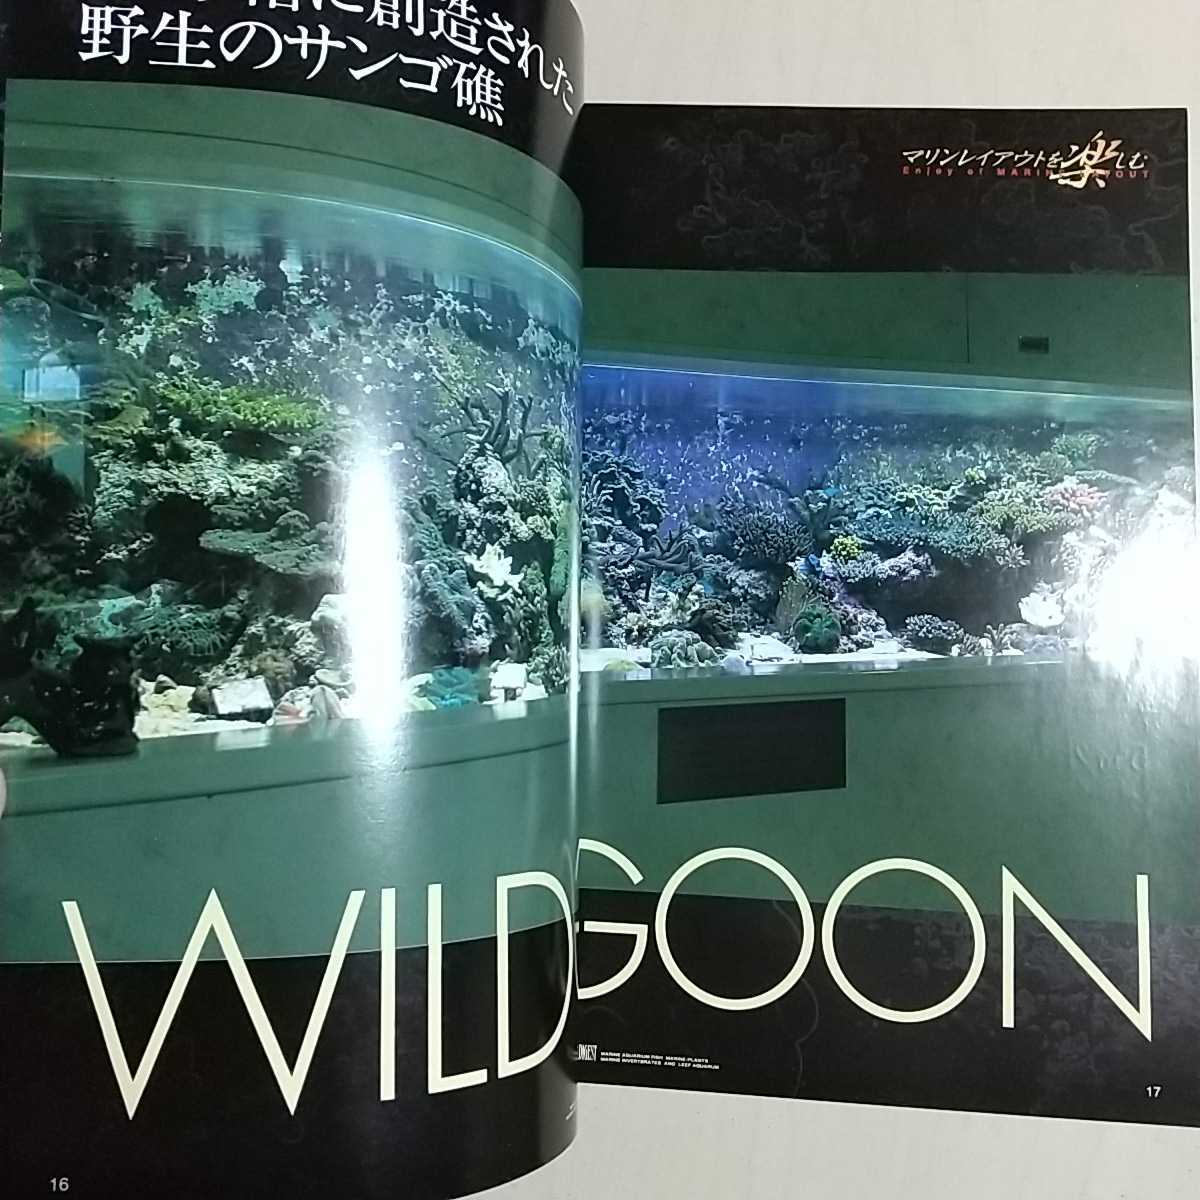 マリンアクアリウムダイジャスト Vol.2 ピーシーズ マリンレイアウトを楽しむ タツノオトシゴの愉快な世界 サンゴ 魚